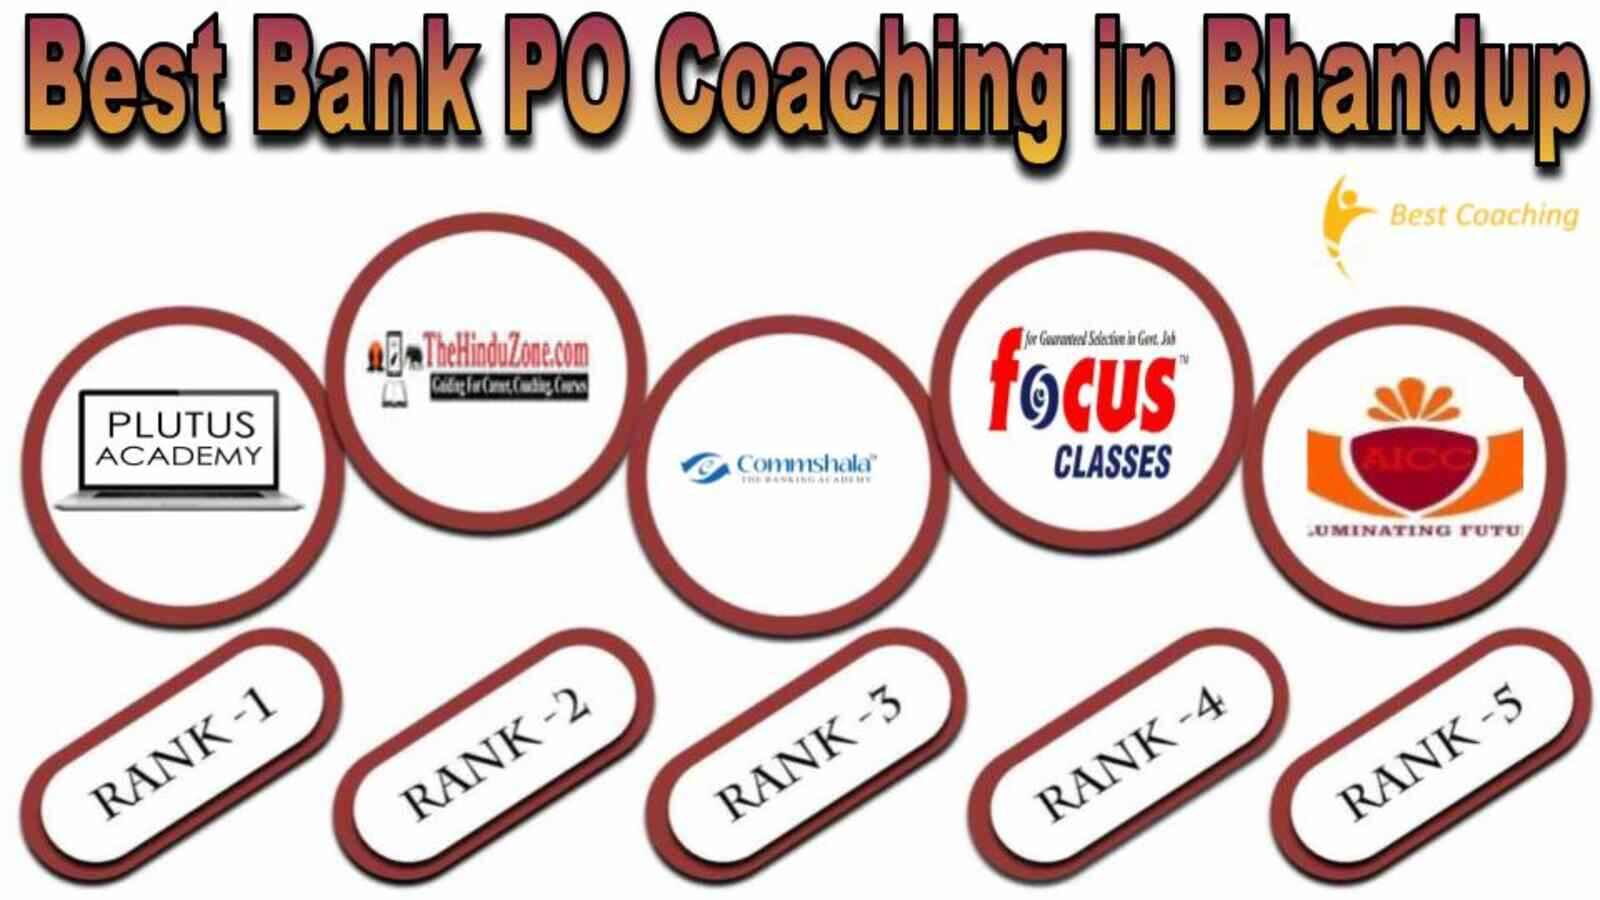 Top Bank PO Coaching in Bhandup